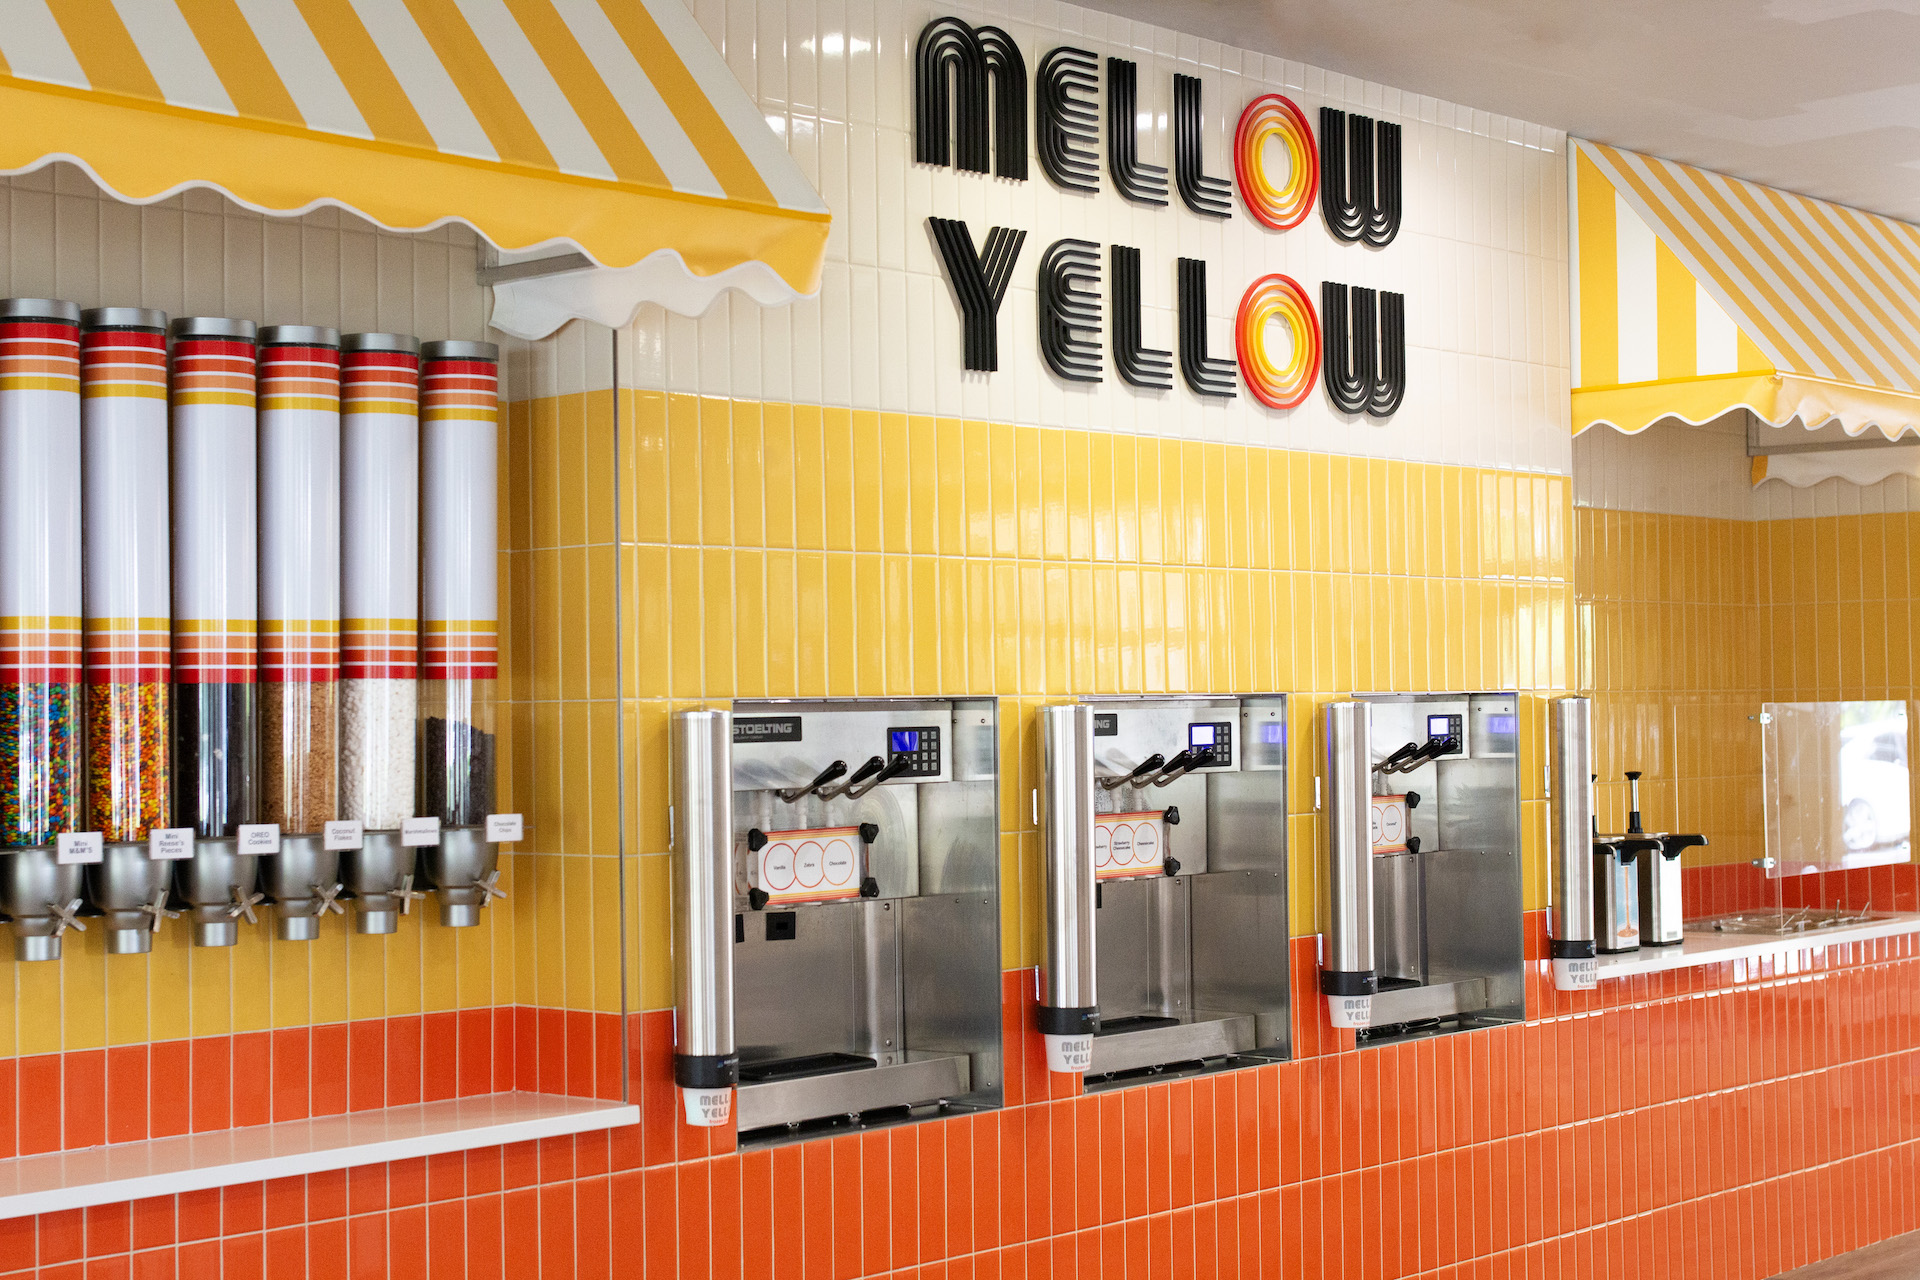 Mellow Yellow Frozen Yogurt dispensers